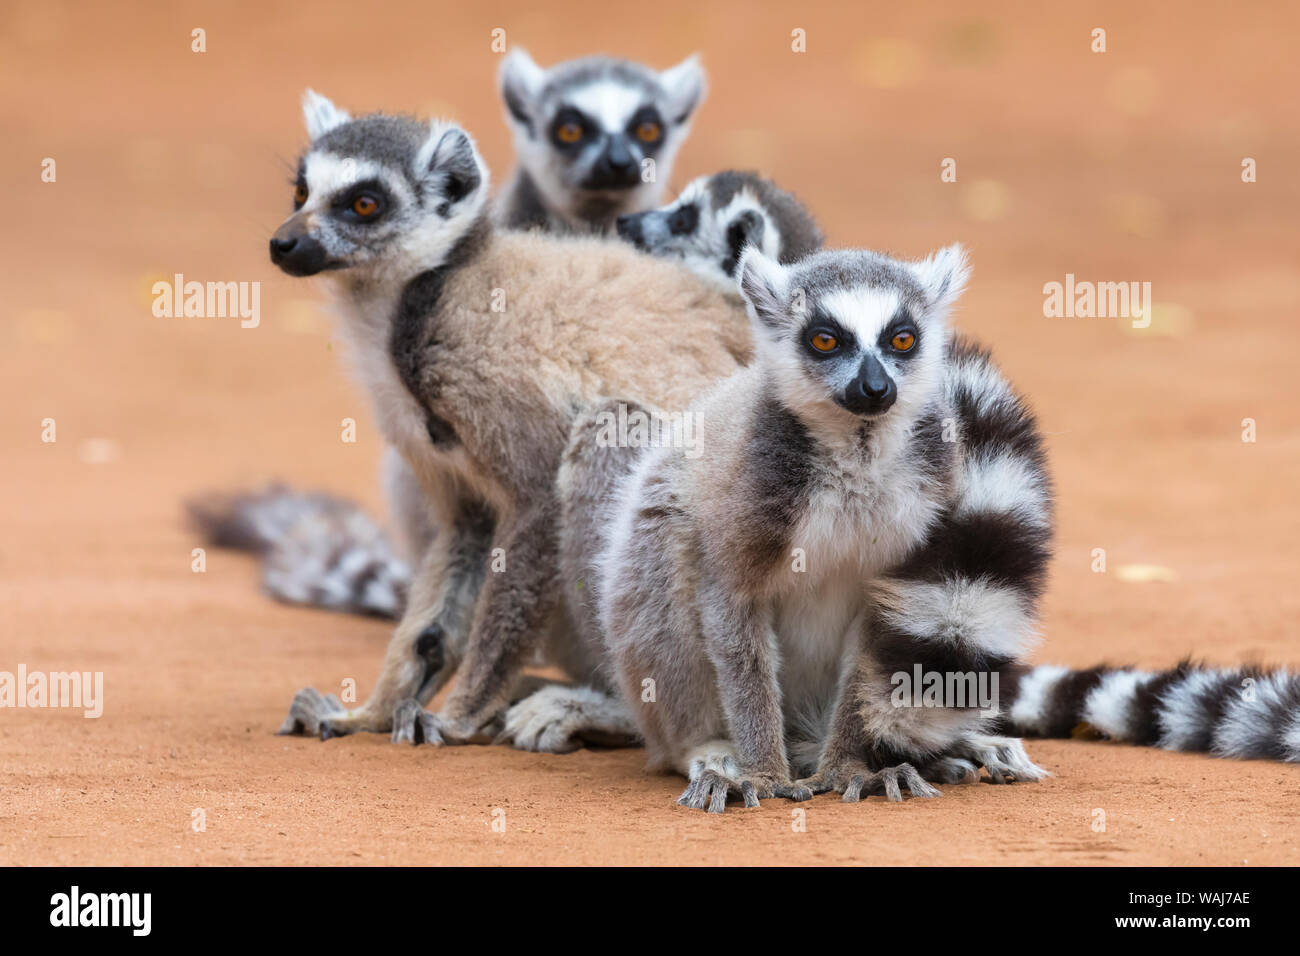 Afrika, Madagaskar, Amboasary, Berenty finden. Eine Gruppe Kattas huddle zusammen für Wärme in den frühen Morgenstunden Chill. Stockfoto